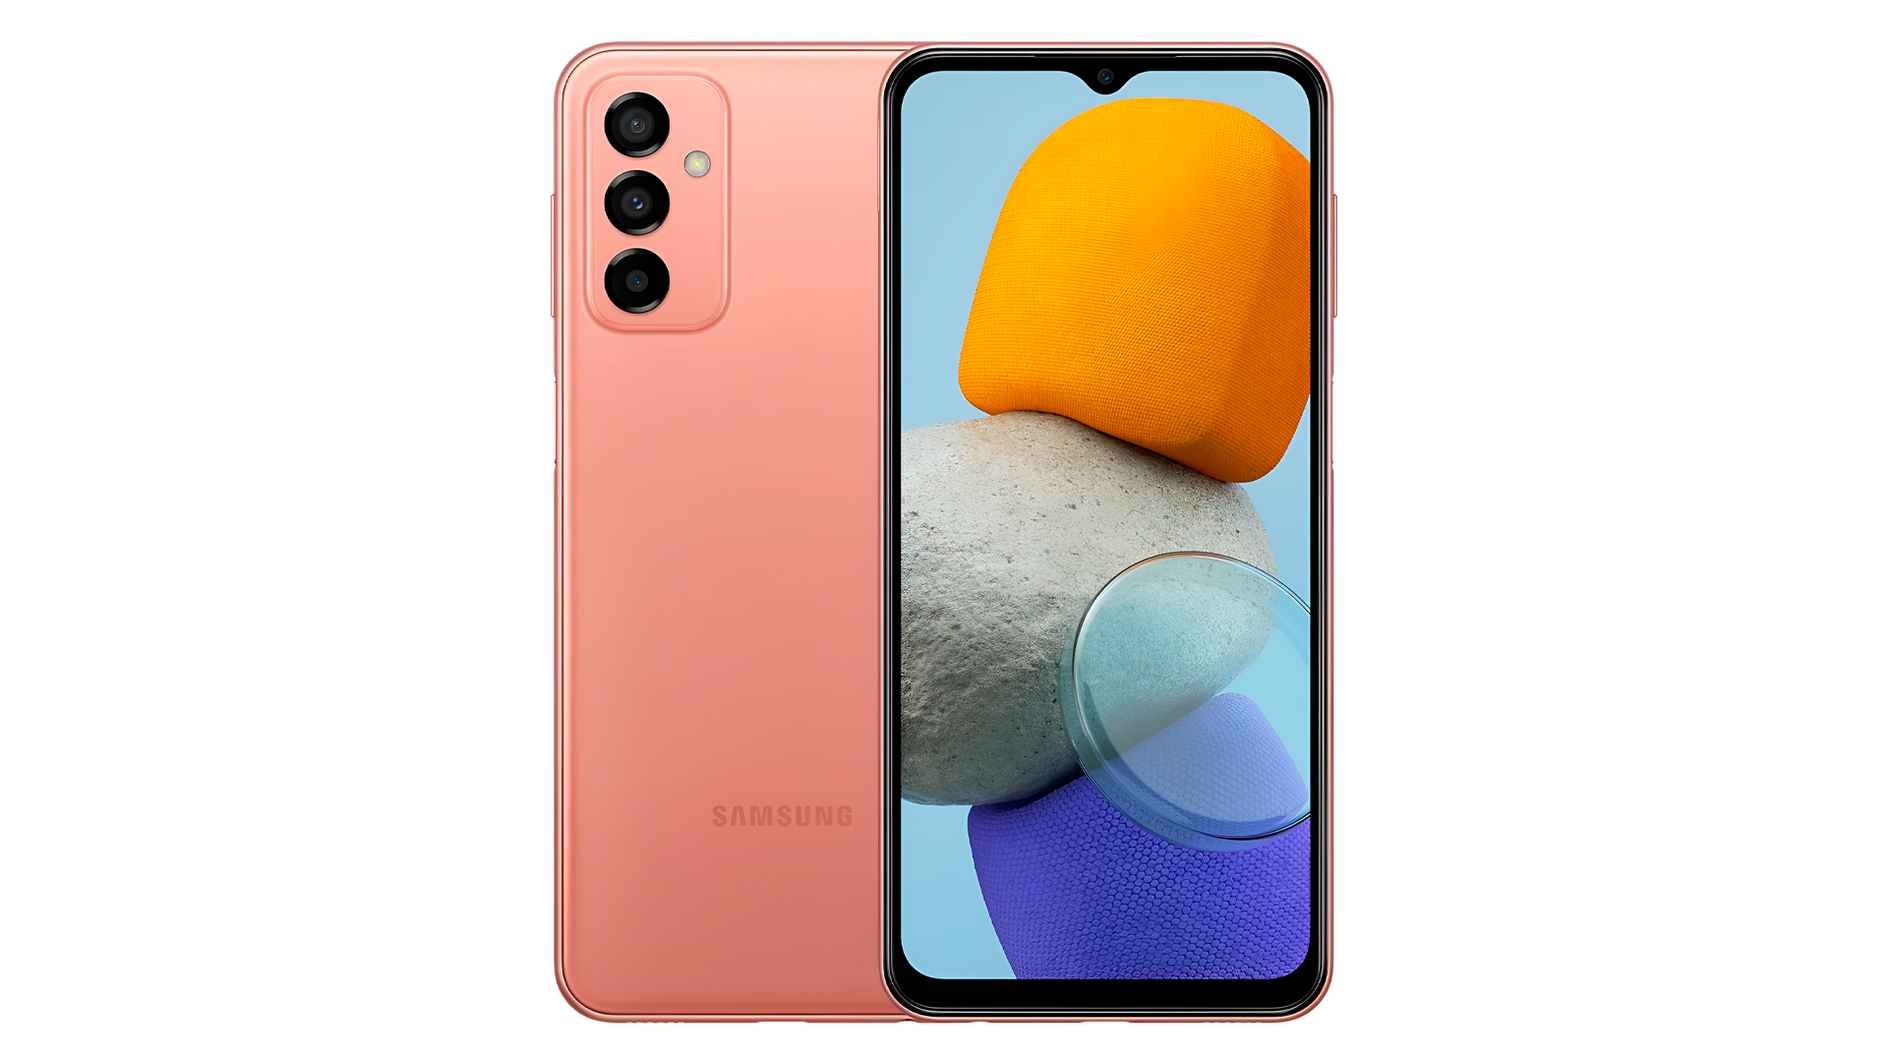 Приятная цена, яркие цвета, хороший софт и камера: за свою цену Samsung Galaxy M23 выступает одной из лучших недорогих моделей смартфонов Samsung.